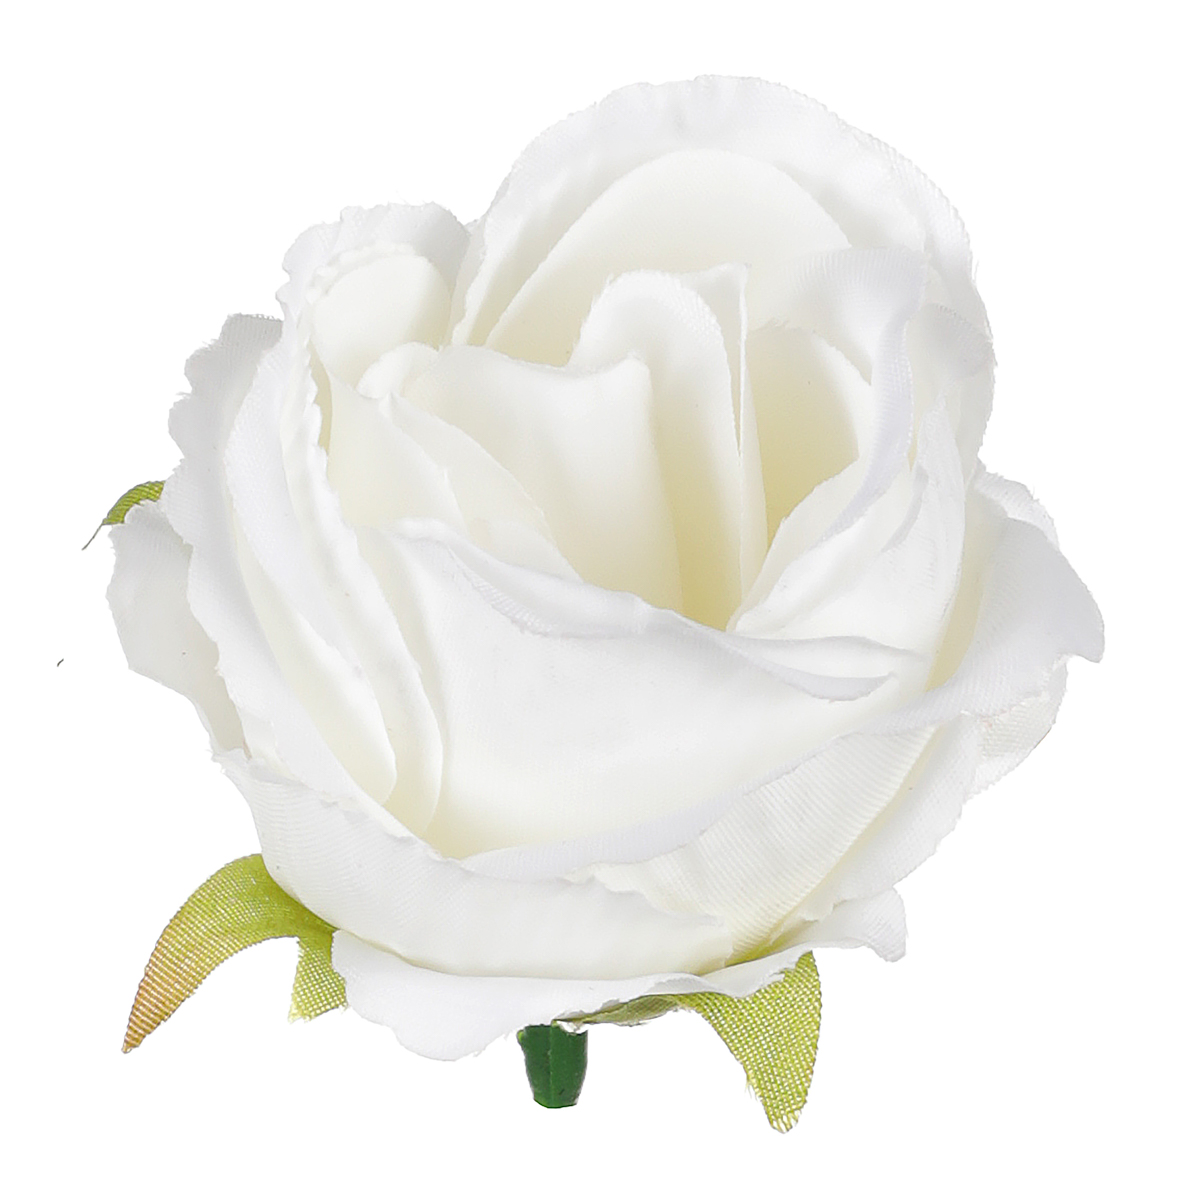 Růže, barva bílá. Květina umělá vazbová. Cena za balení 6 kusů.